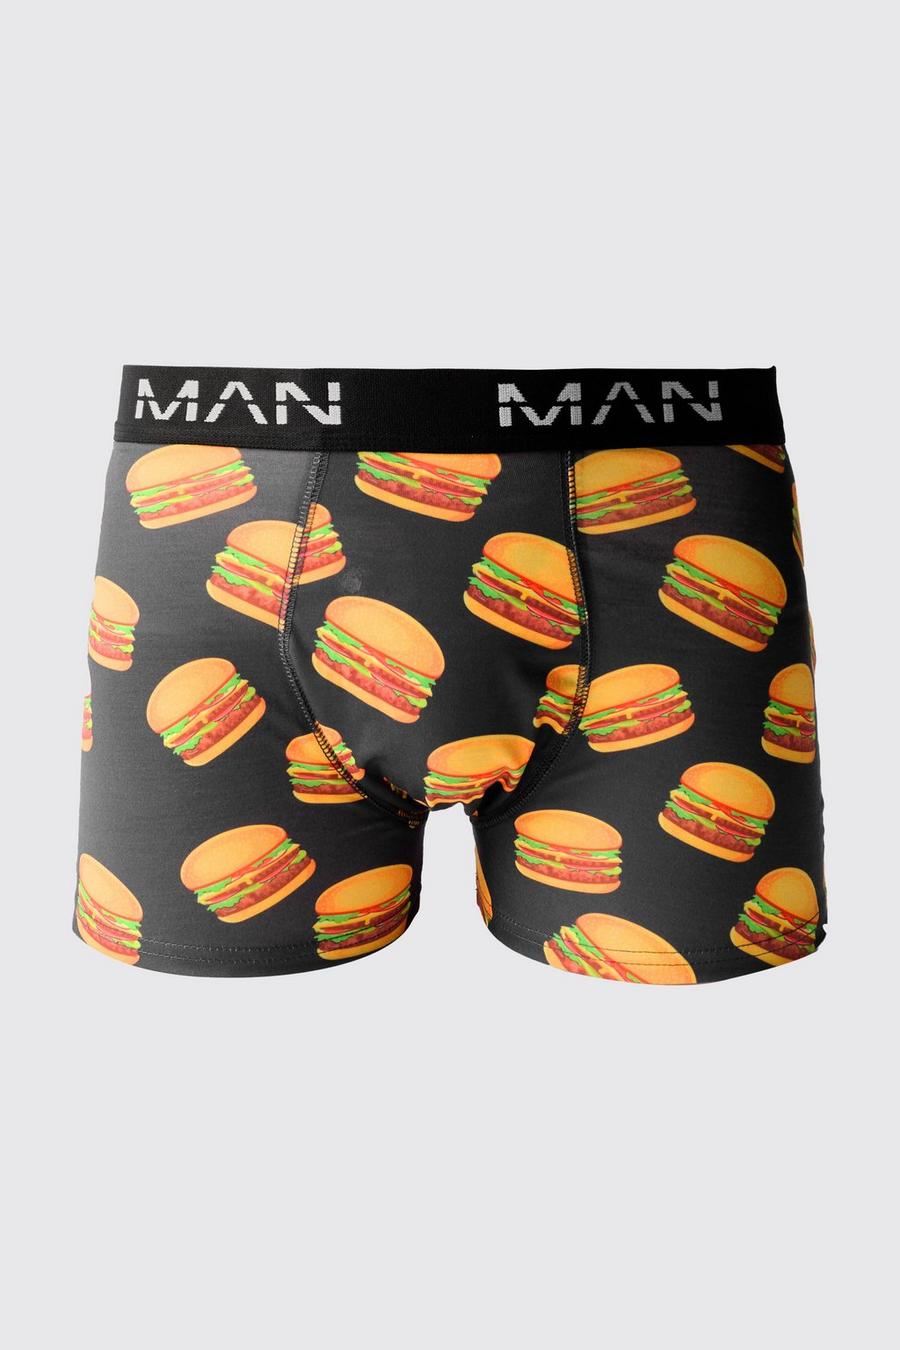 Multi Man Burger Printed Boxers